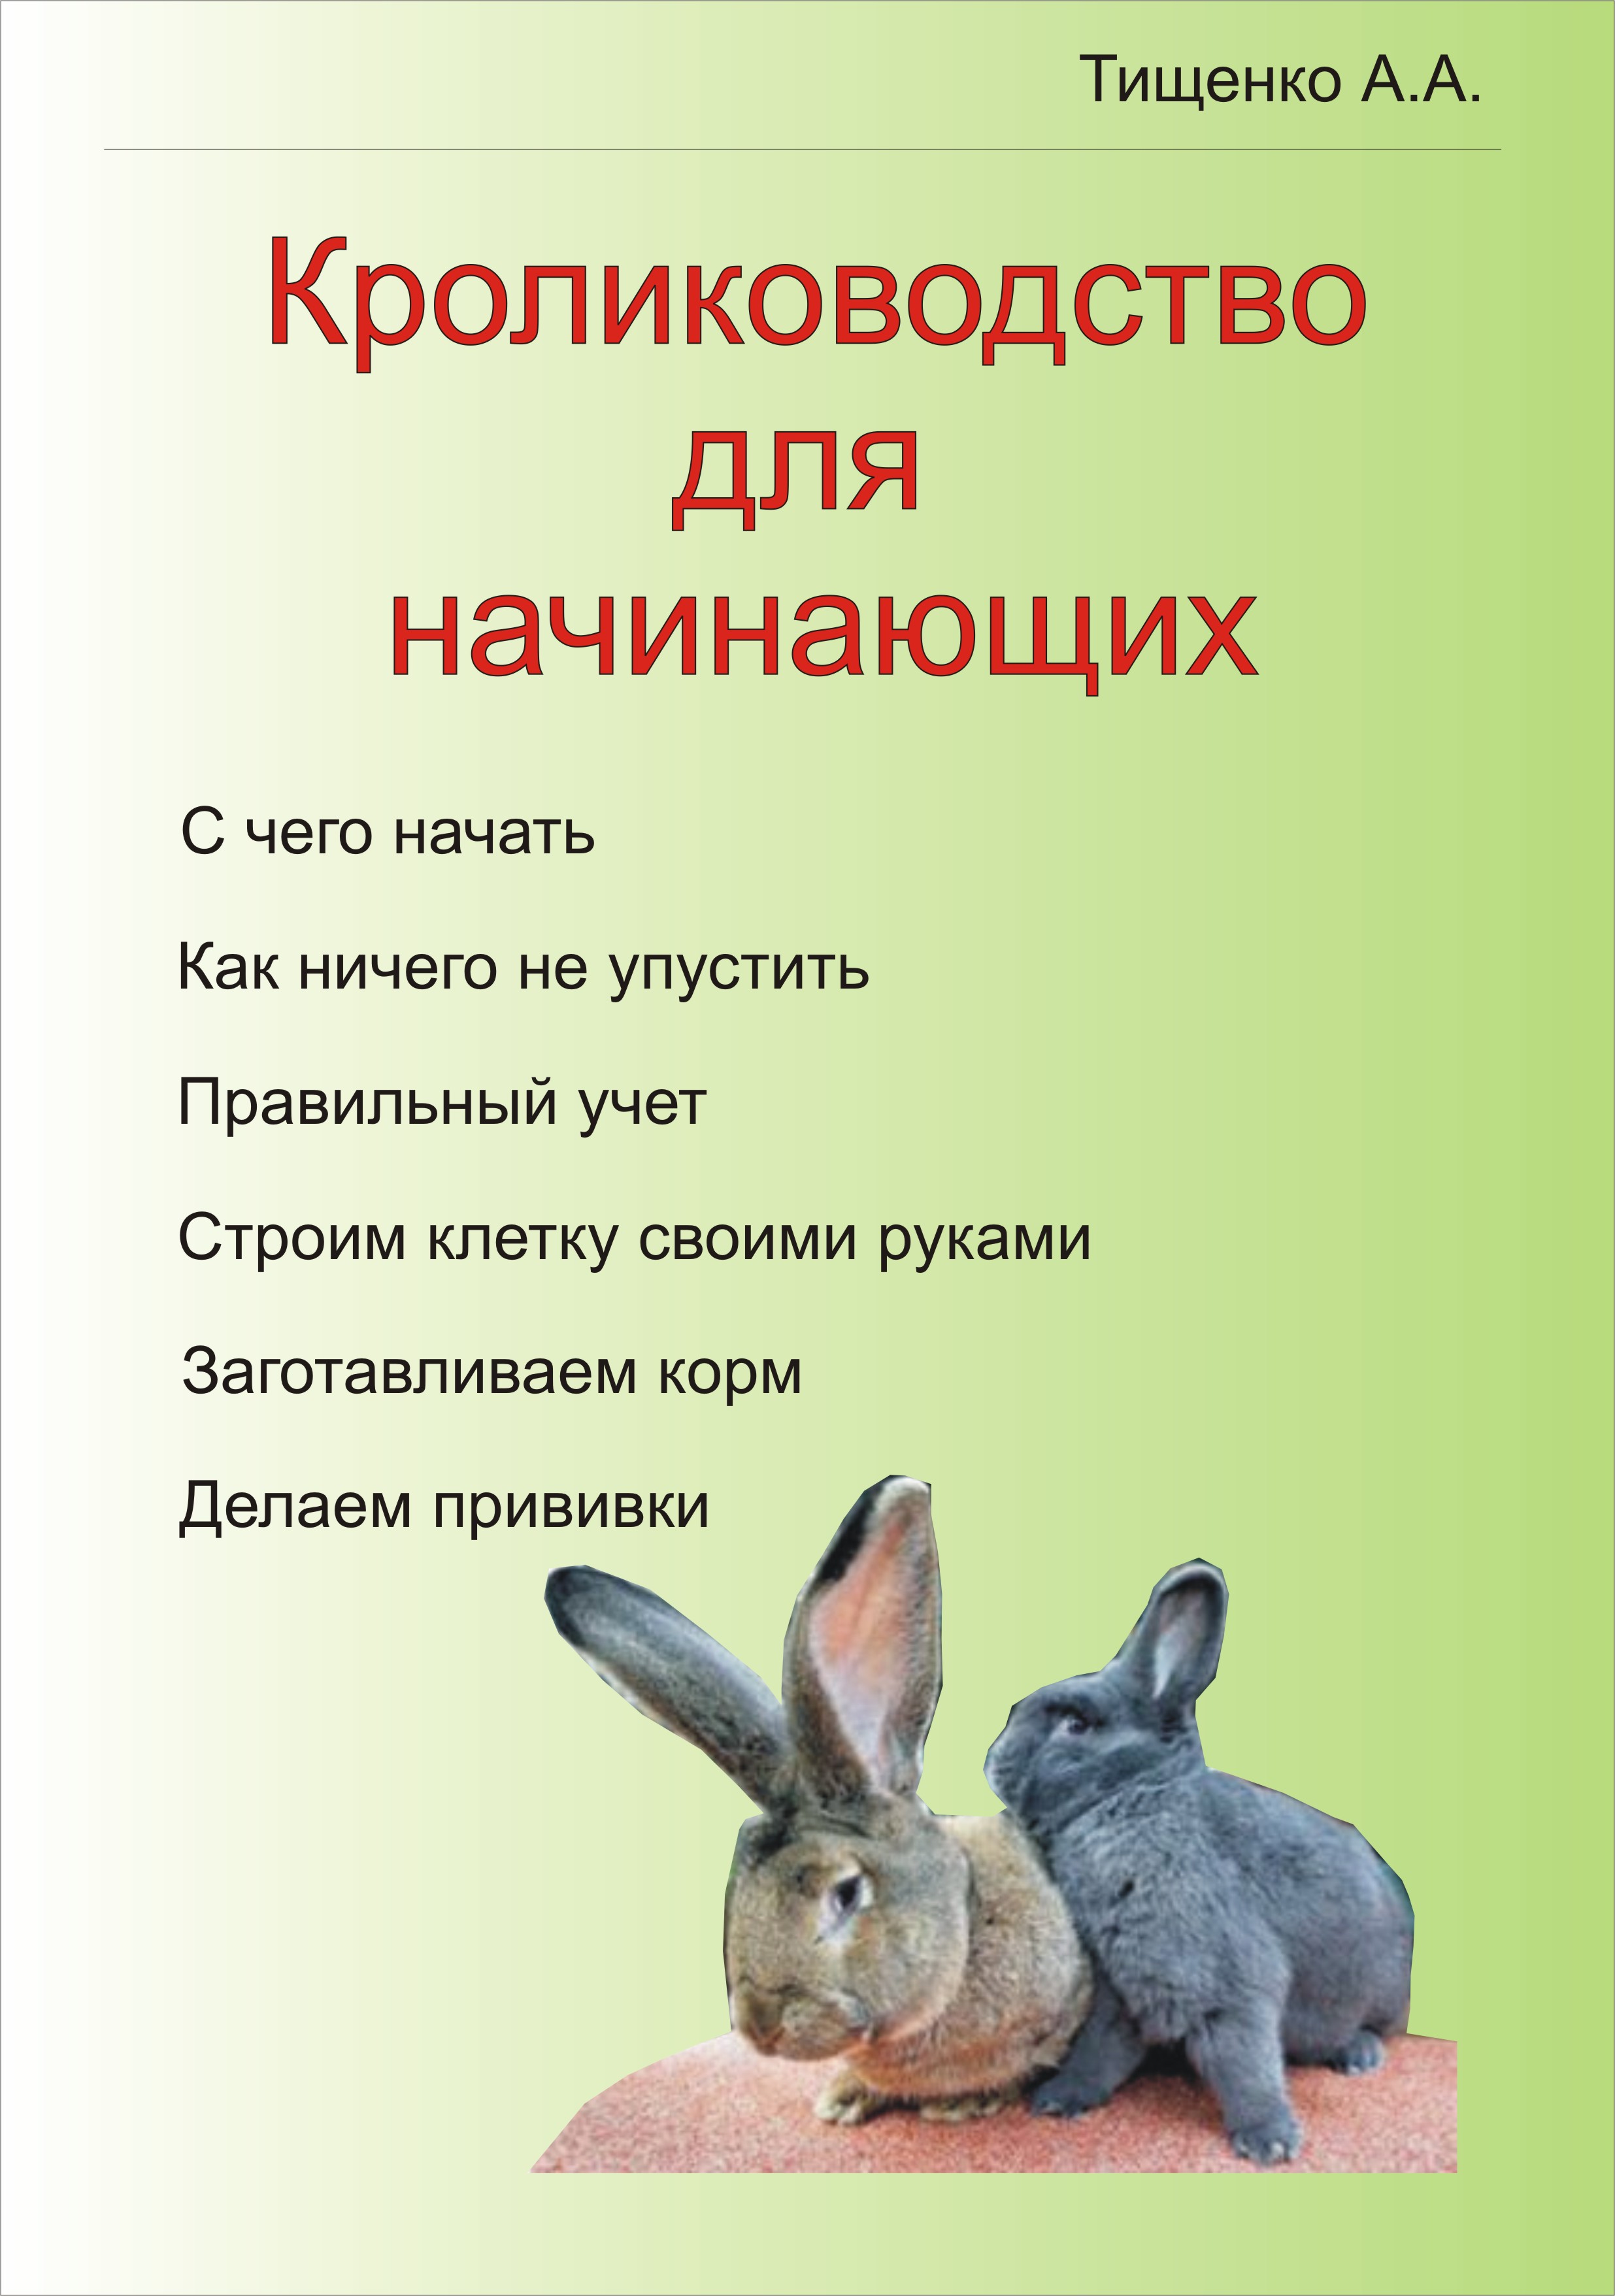 Книги по кролиководство скачать